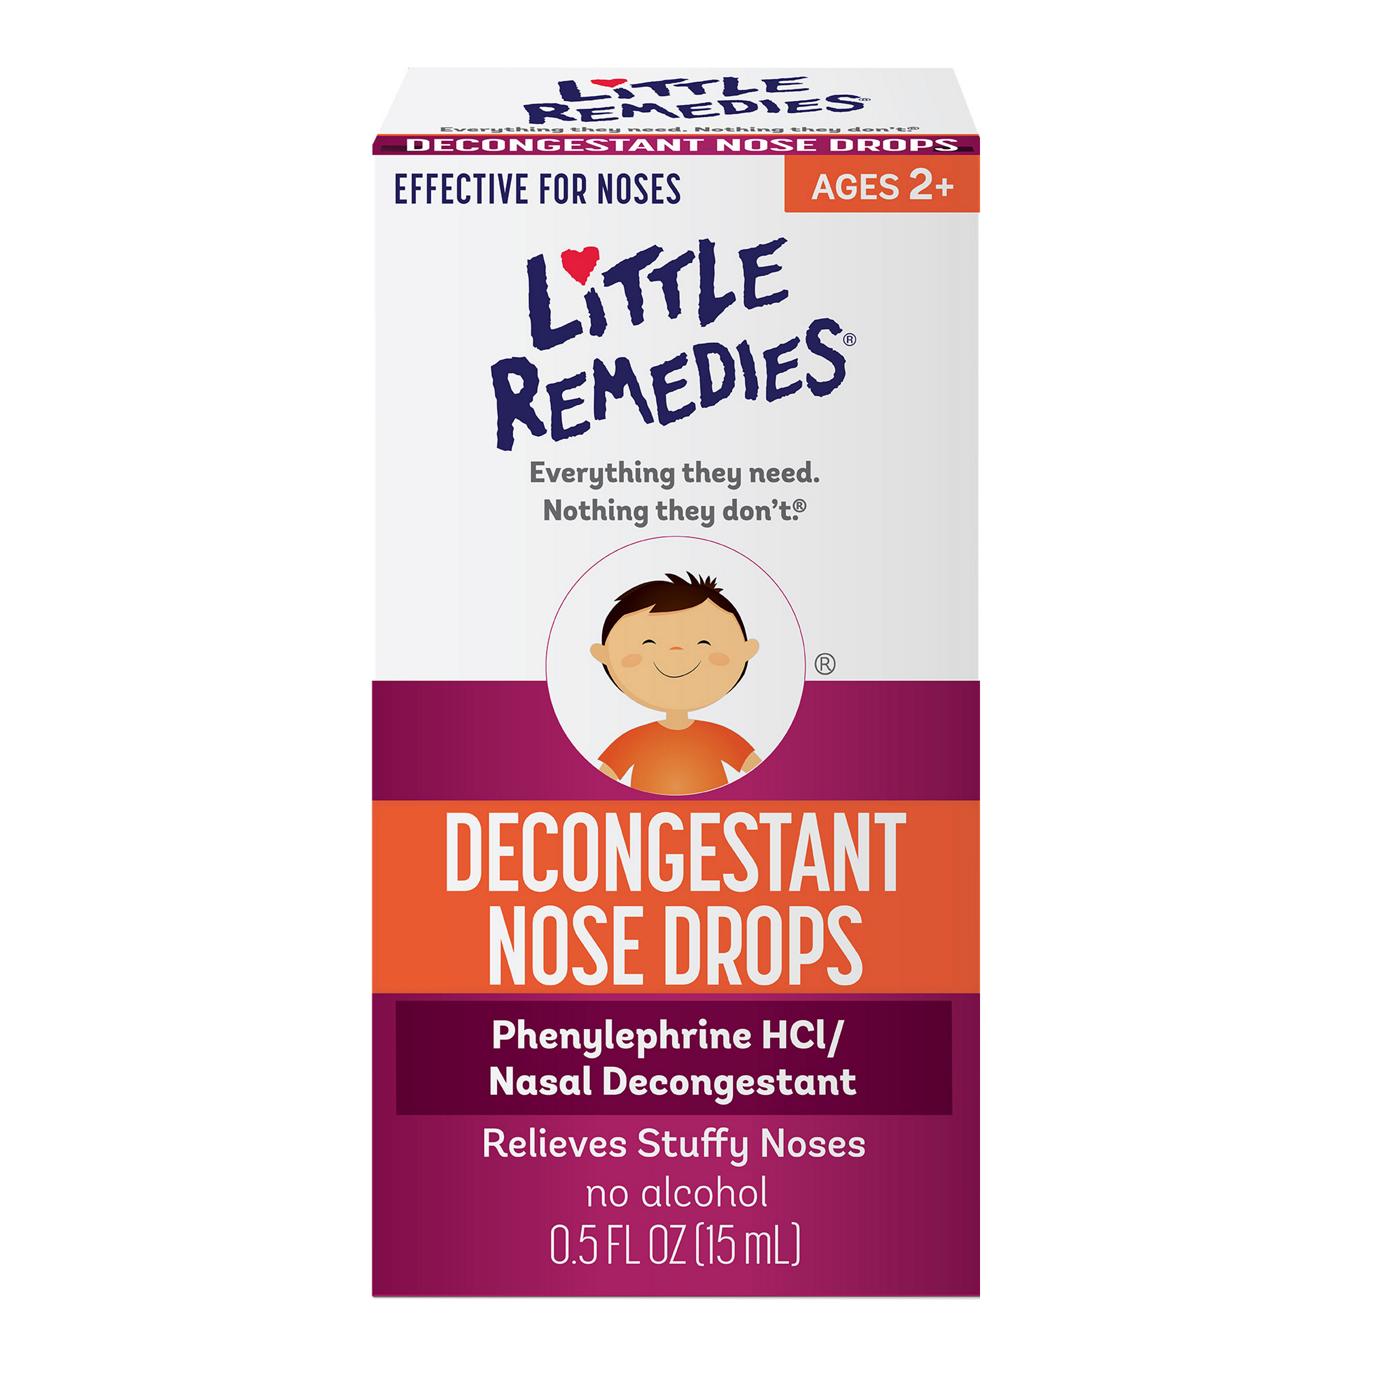 Little Remedies Decongestant Nose Drops; image 1 of 5